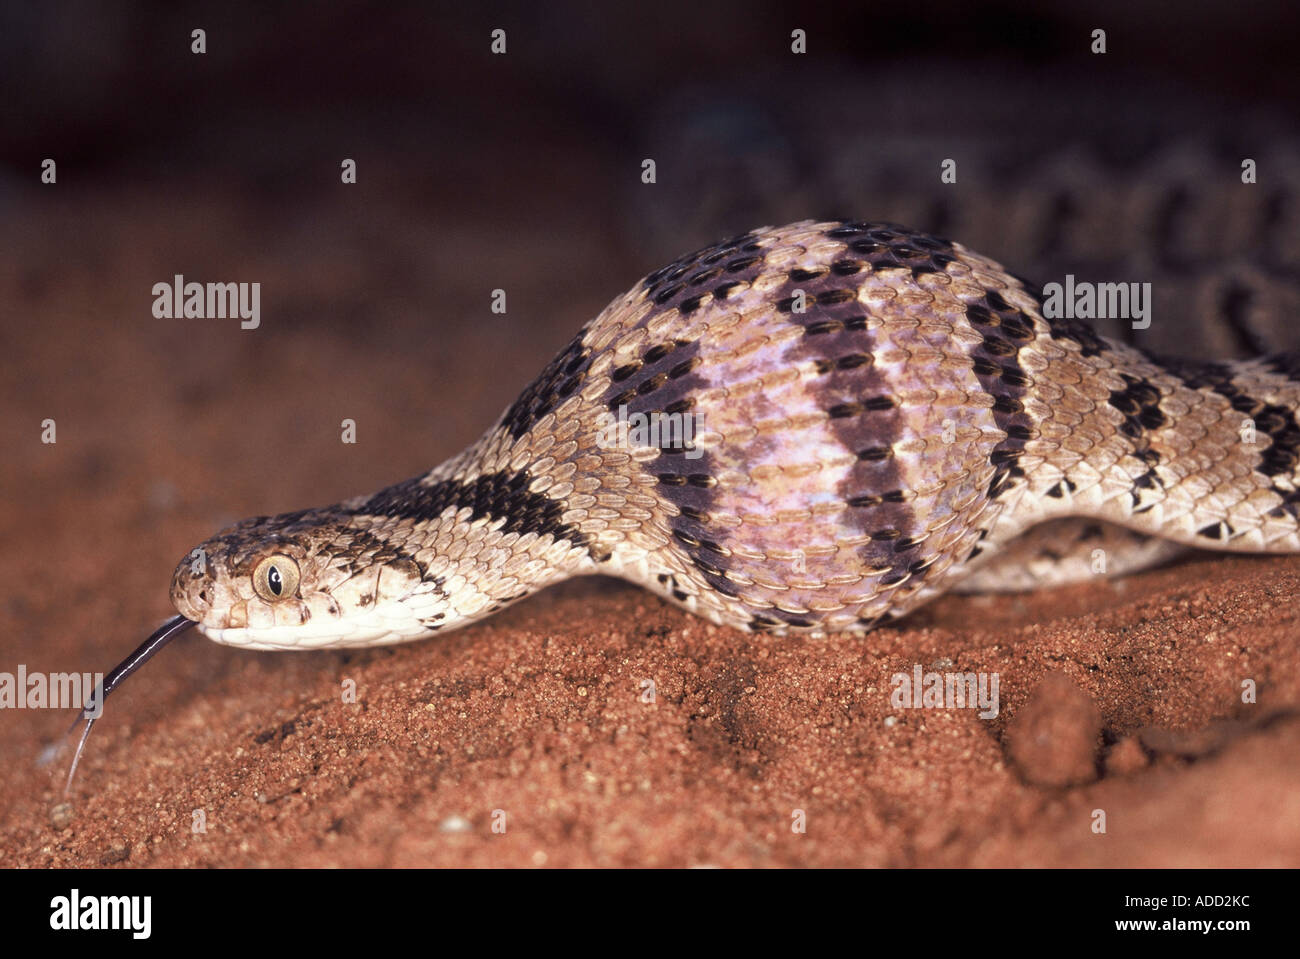 Rhombic Egg-Eater, Dasypeltis scabra Stock Photo